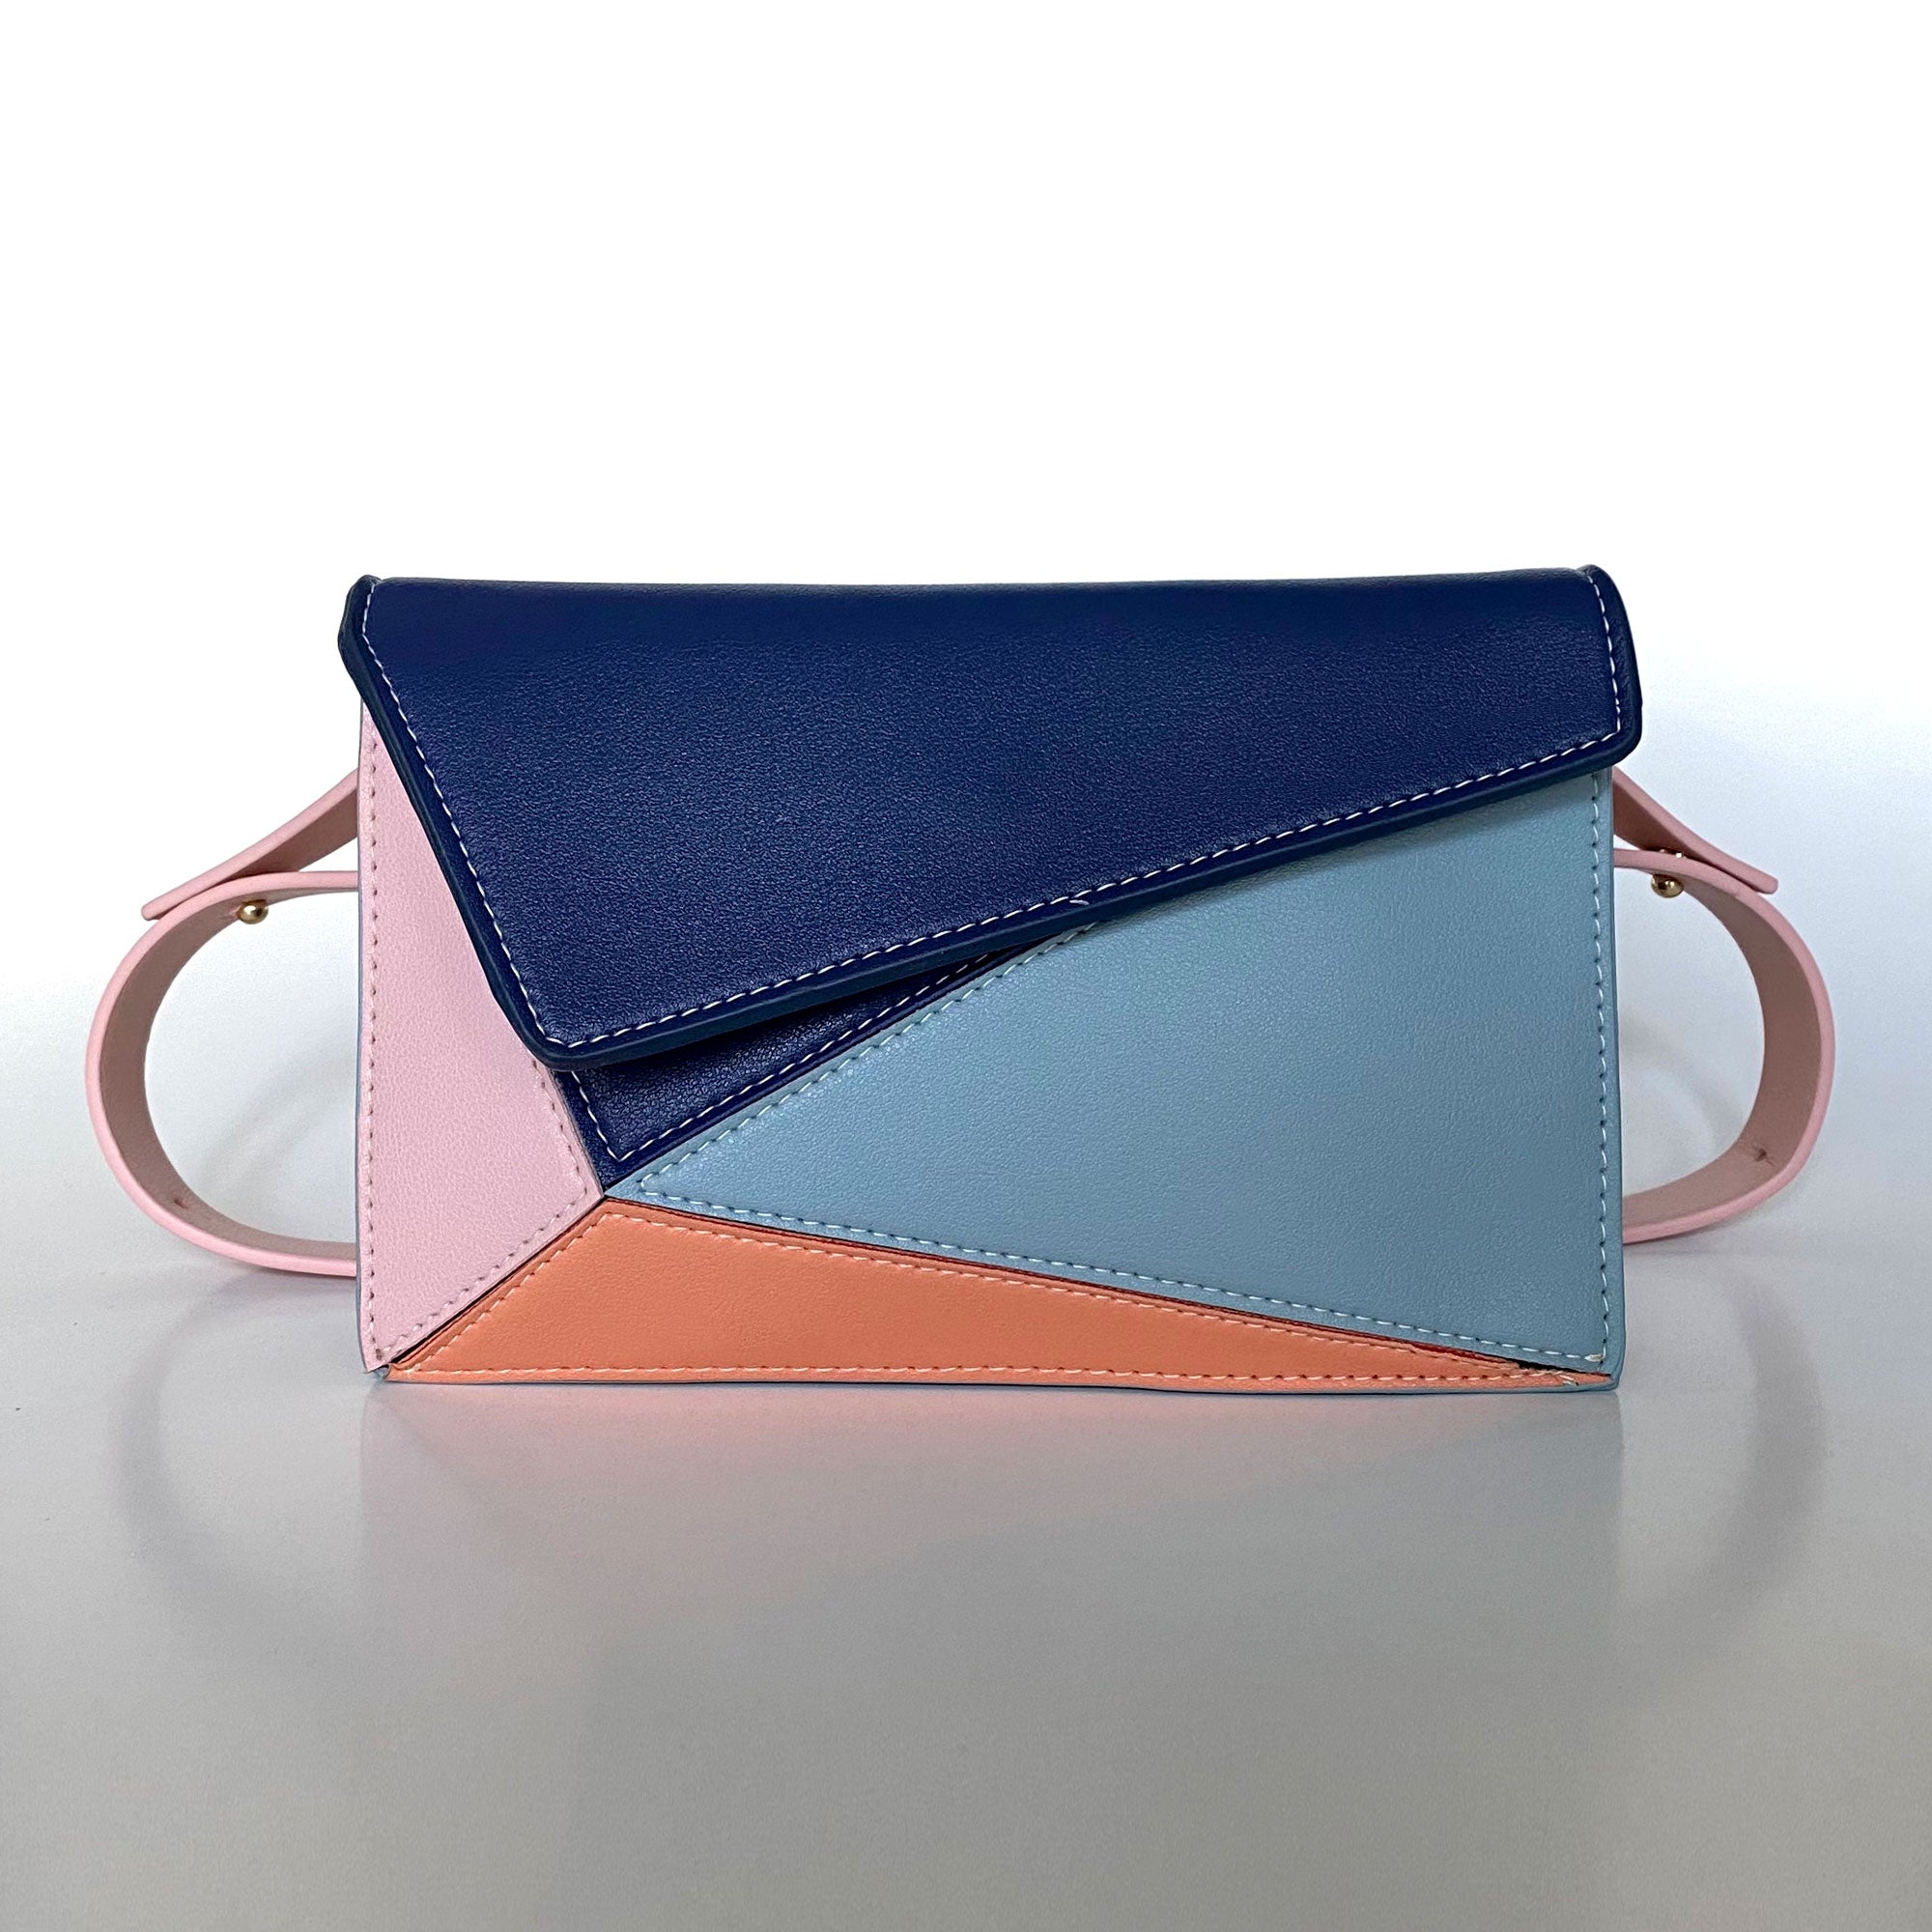 Lumiliu Criss Cross +++ A Color Changing Handbag